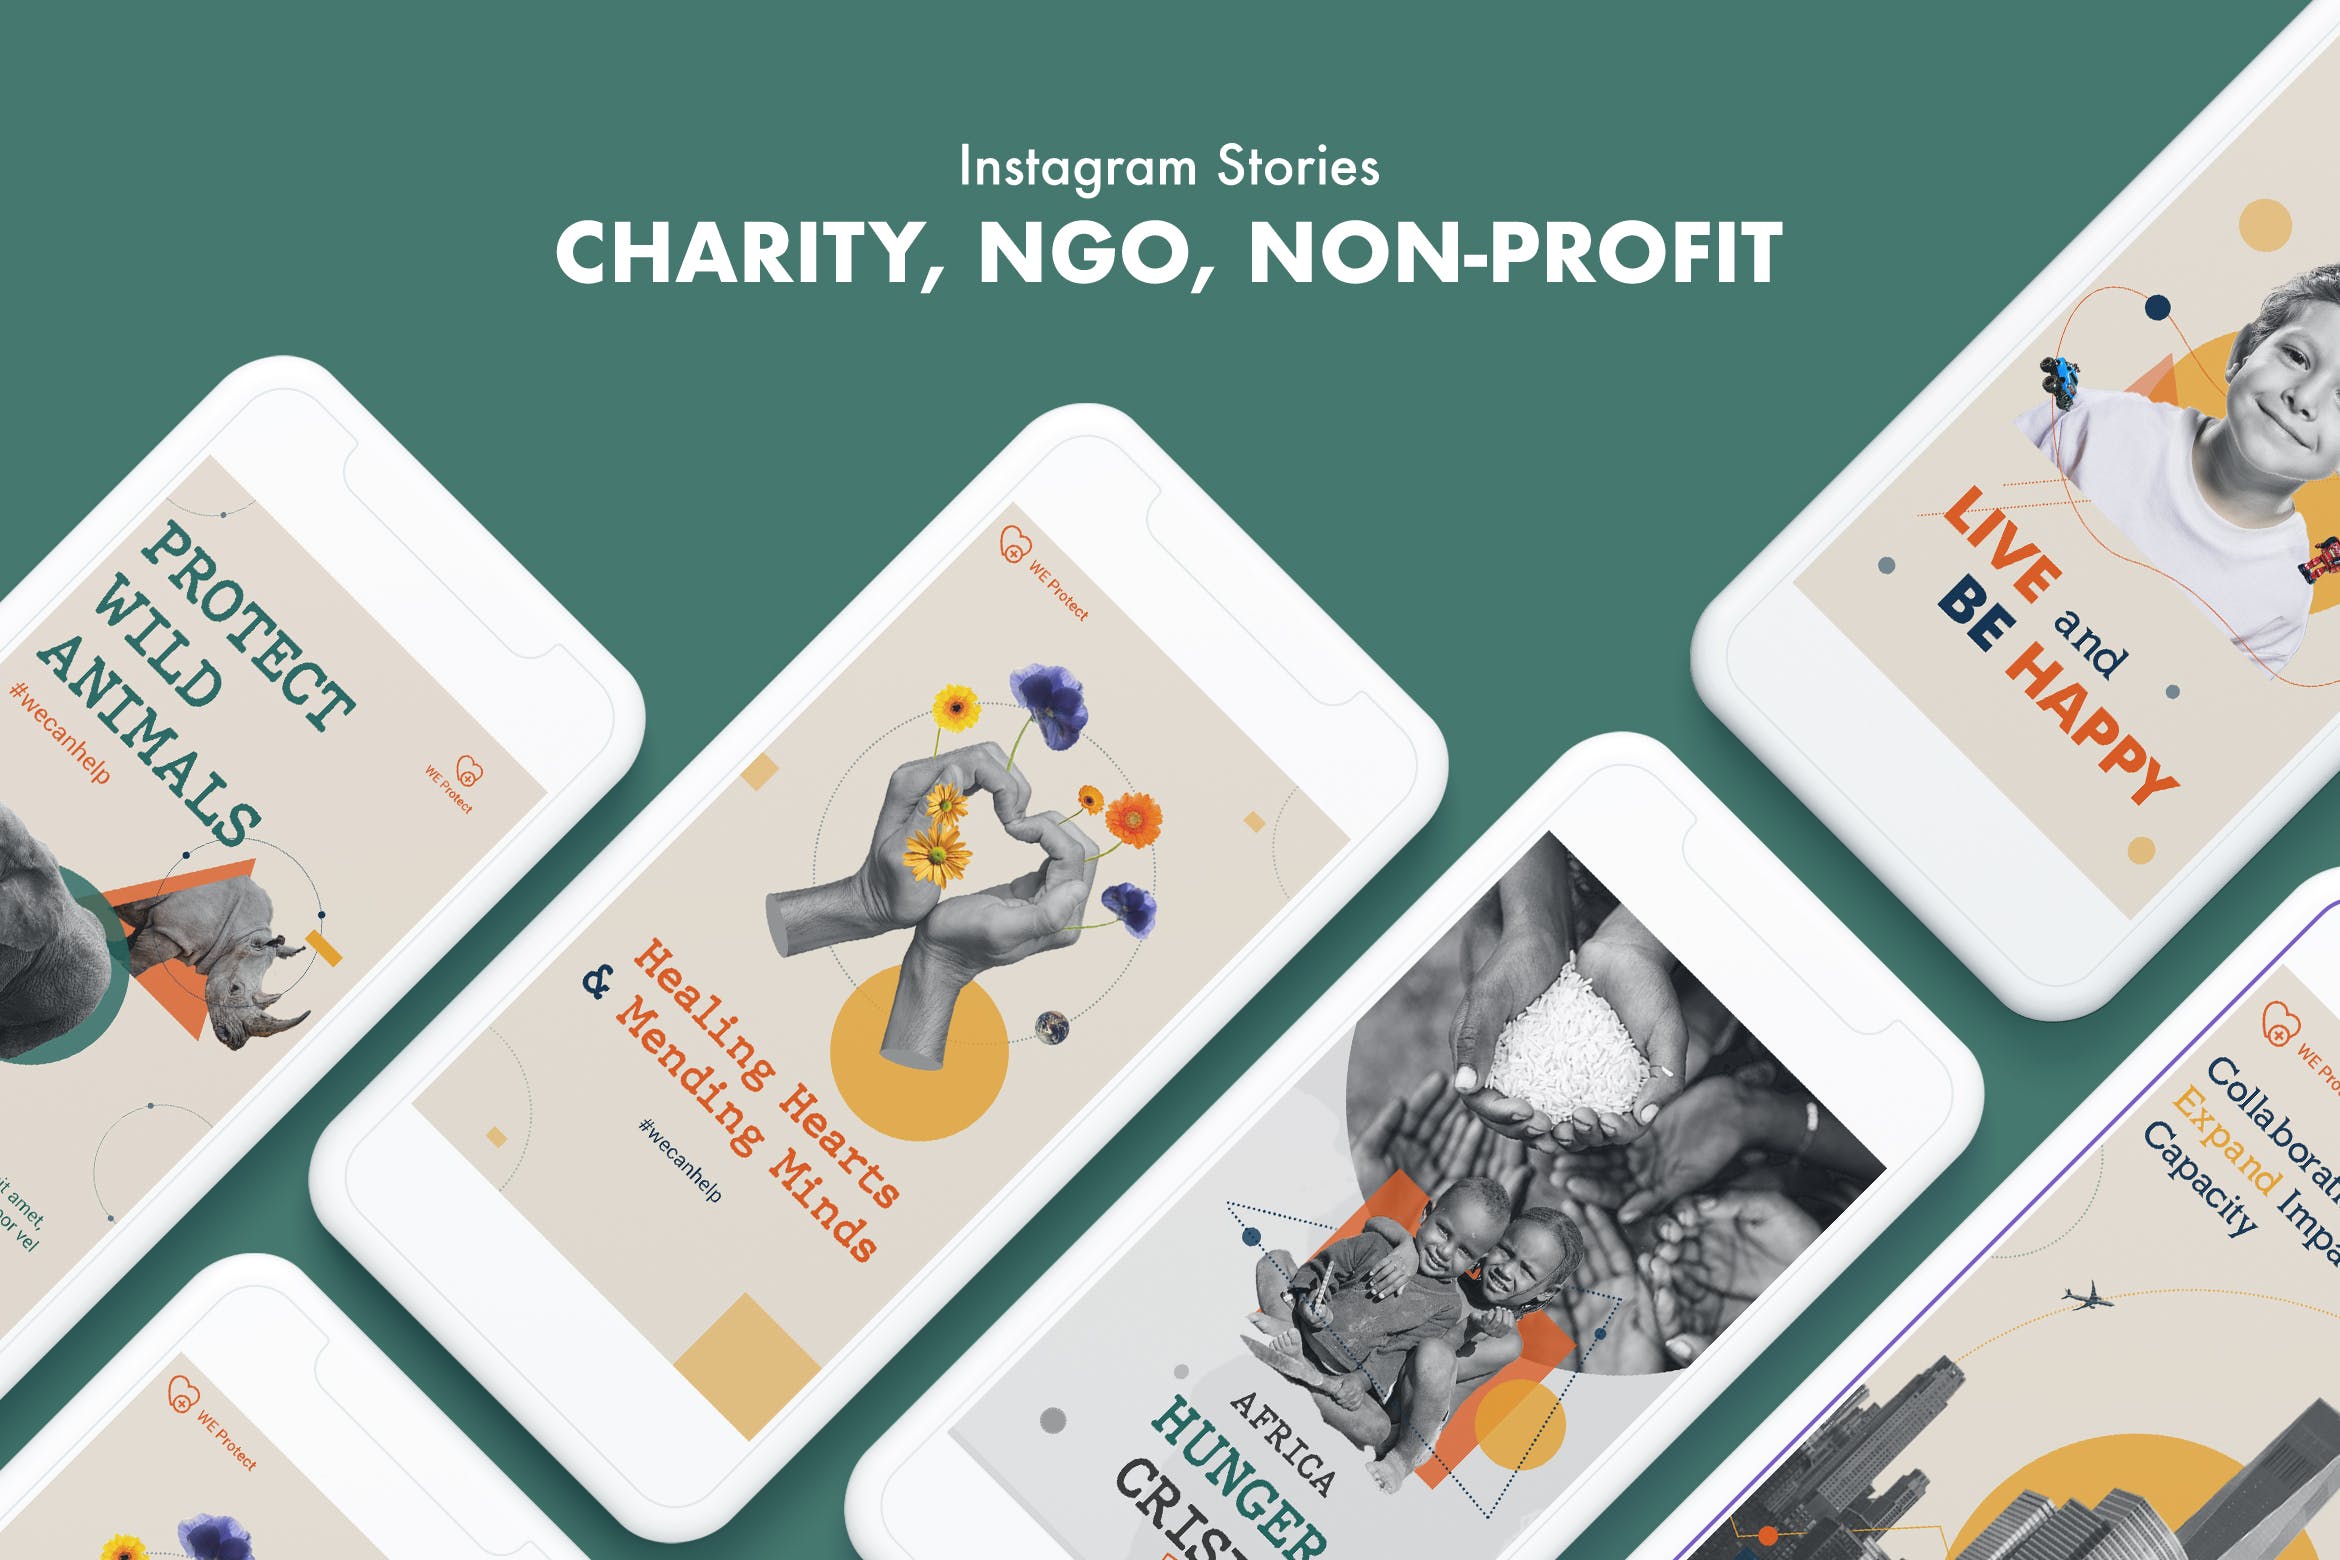 慈善/非政府/非盈利组织机构Instagram社交宣传设计素材 Charity, NGO, Non-Profit Instagram Stories插图